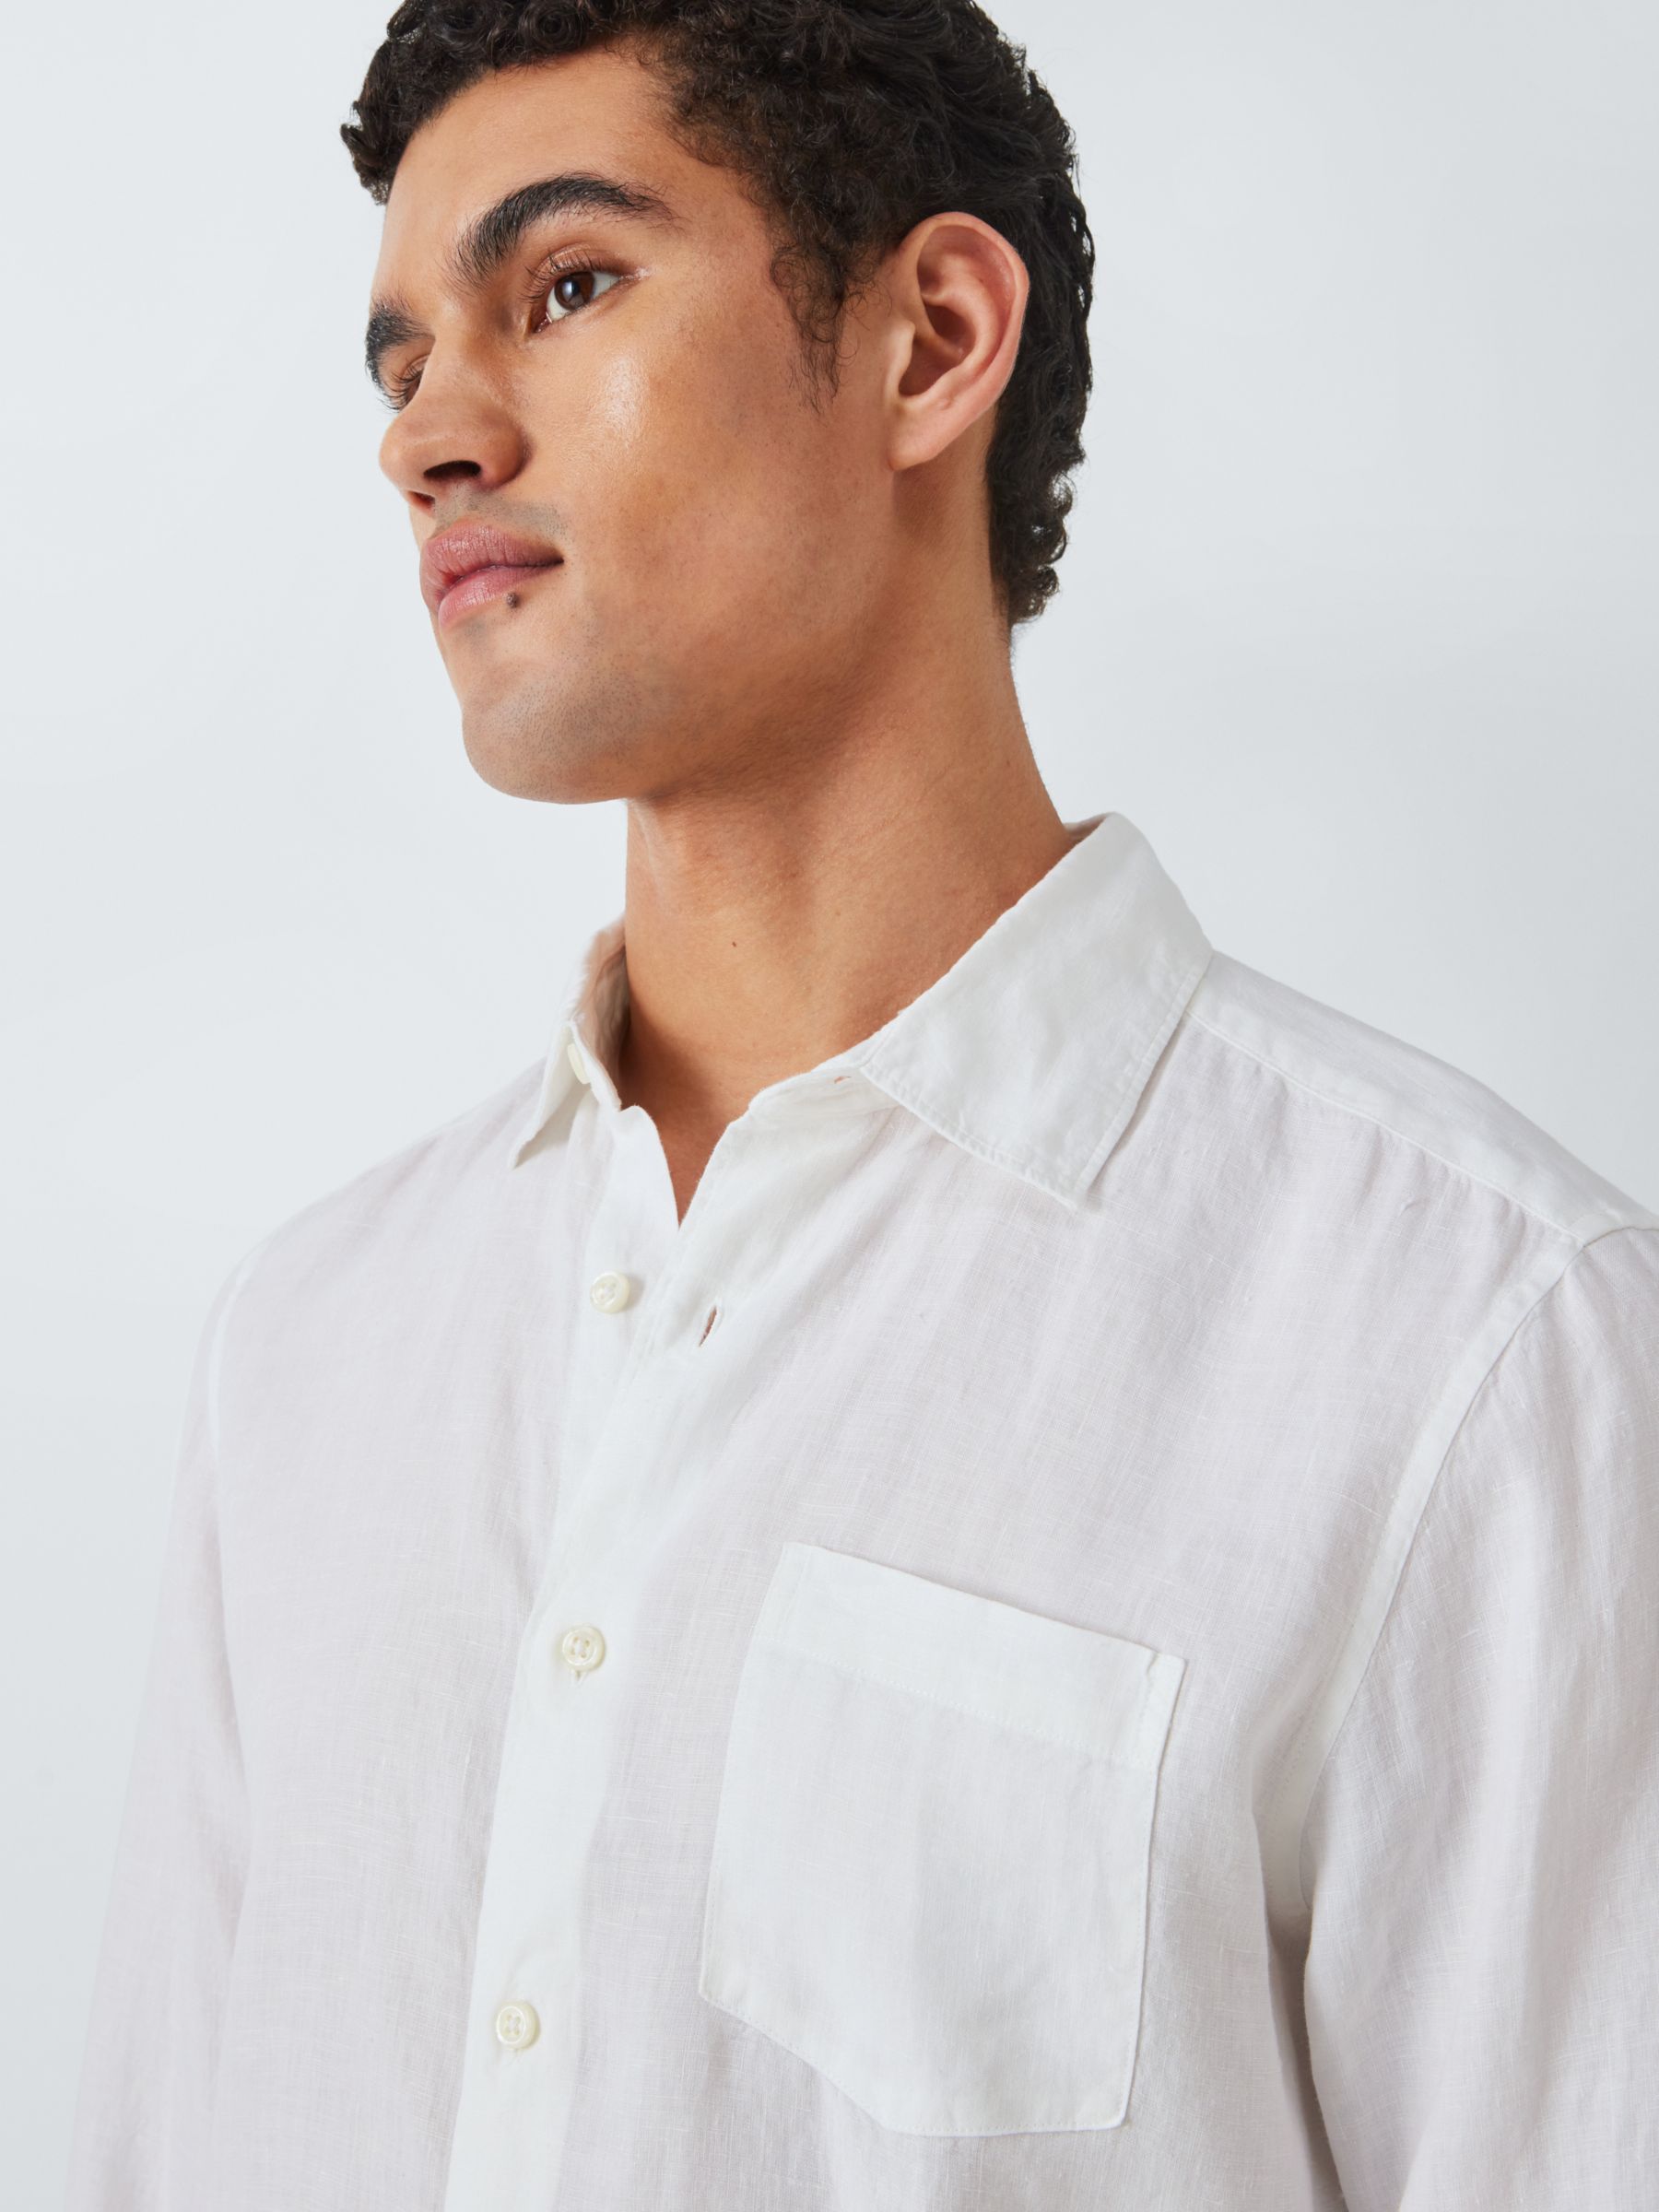 John Lewis Linen Regular Fit Shirt, White at John Lewis & Partners